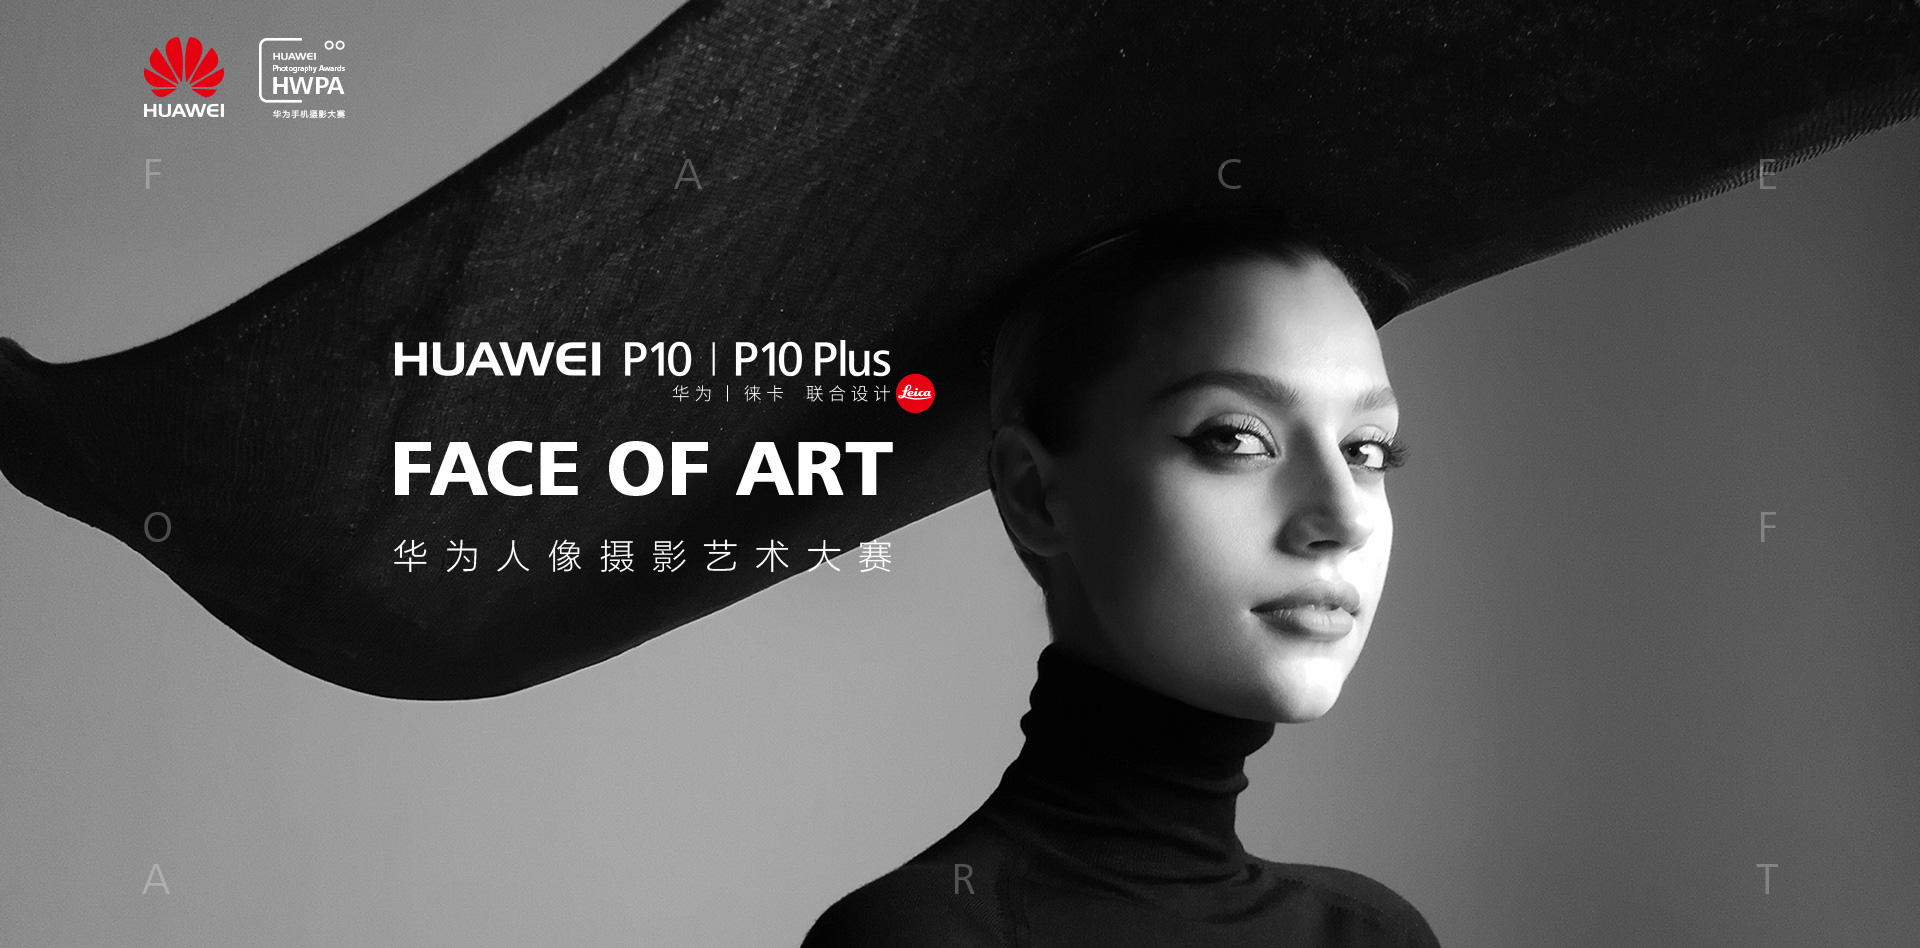 首页 FACE OF ART华为人像摄影艺术大赛| HUAWEI P10|P10 Plus1920 x 948